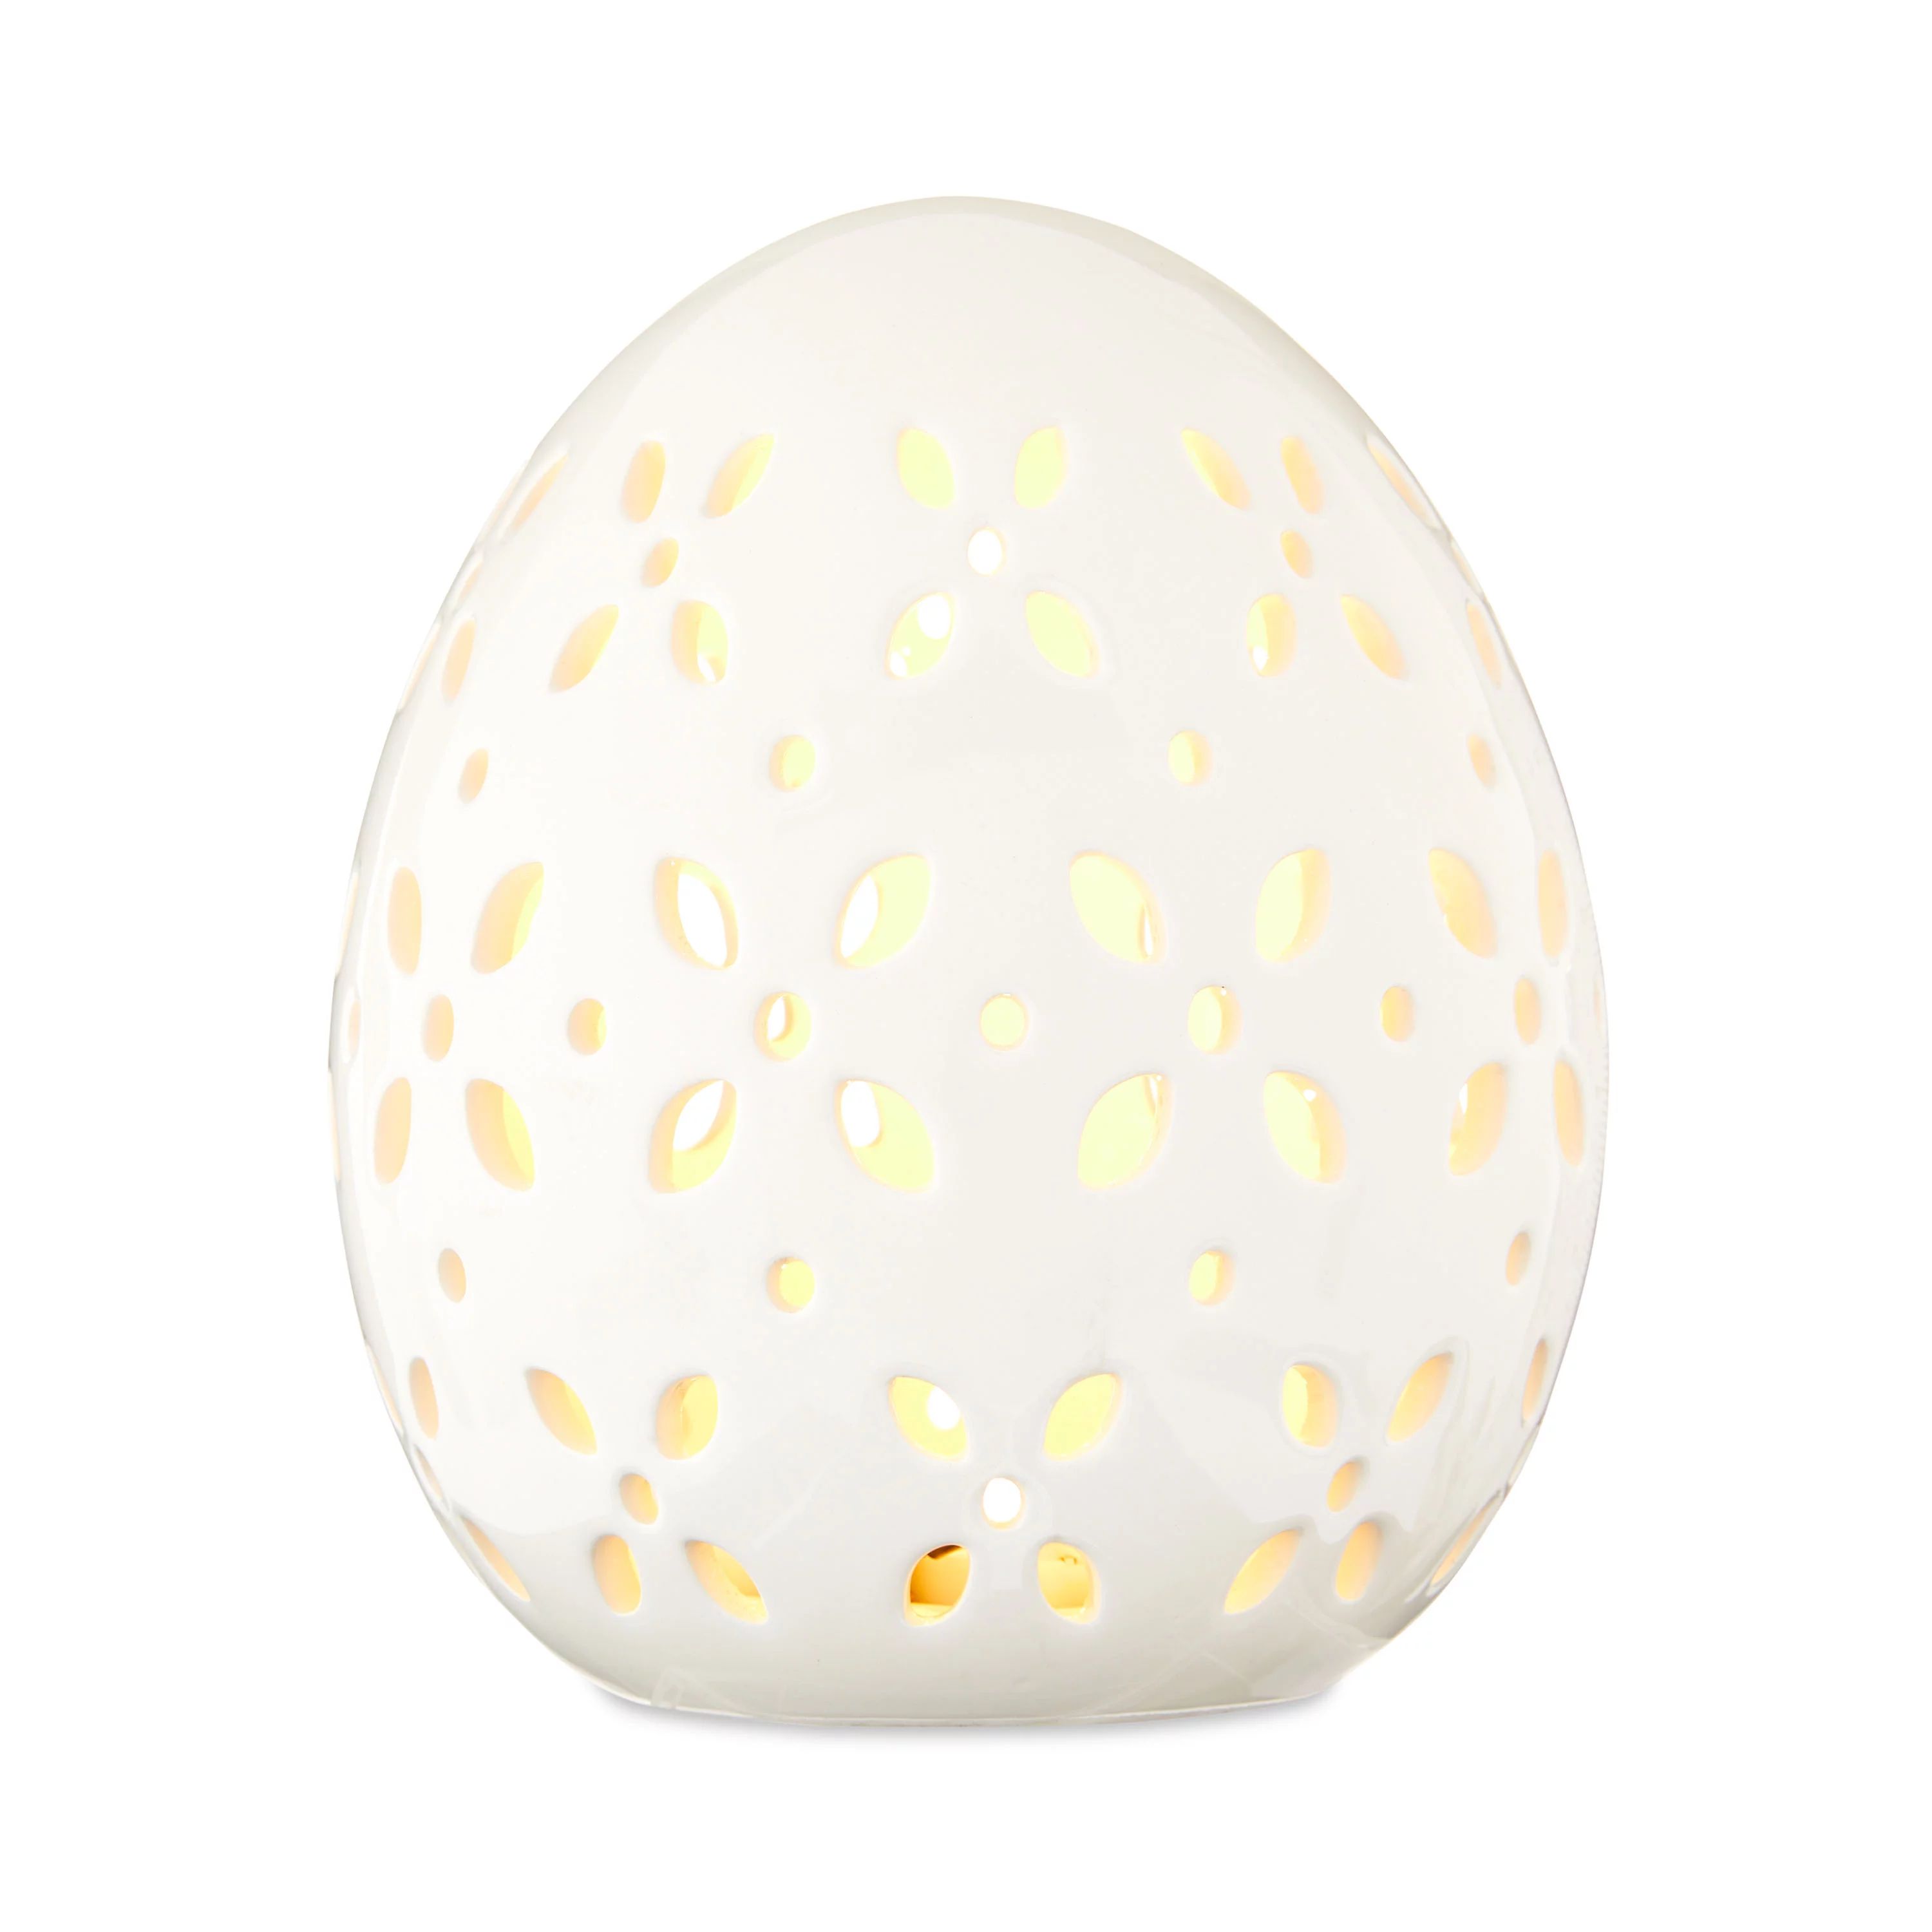 Way To Celebrate Large Easter Ceramic LED White Egg | Walmart (US)